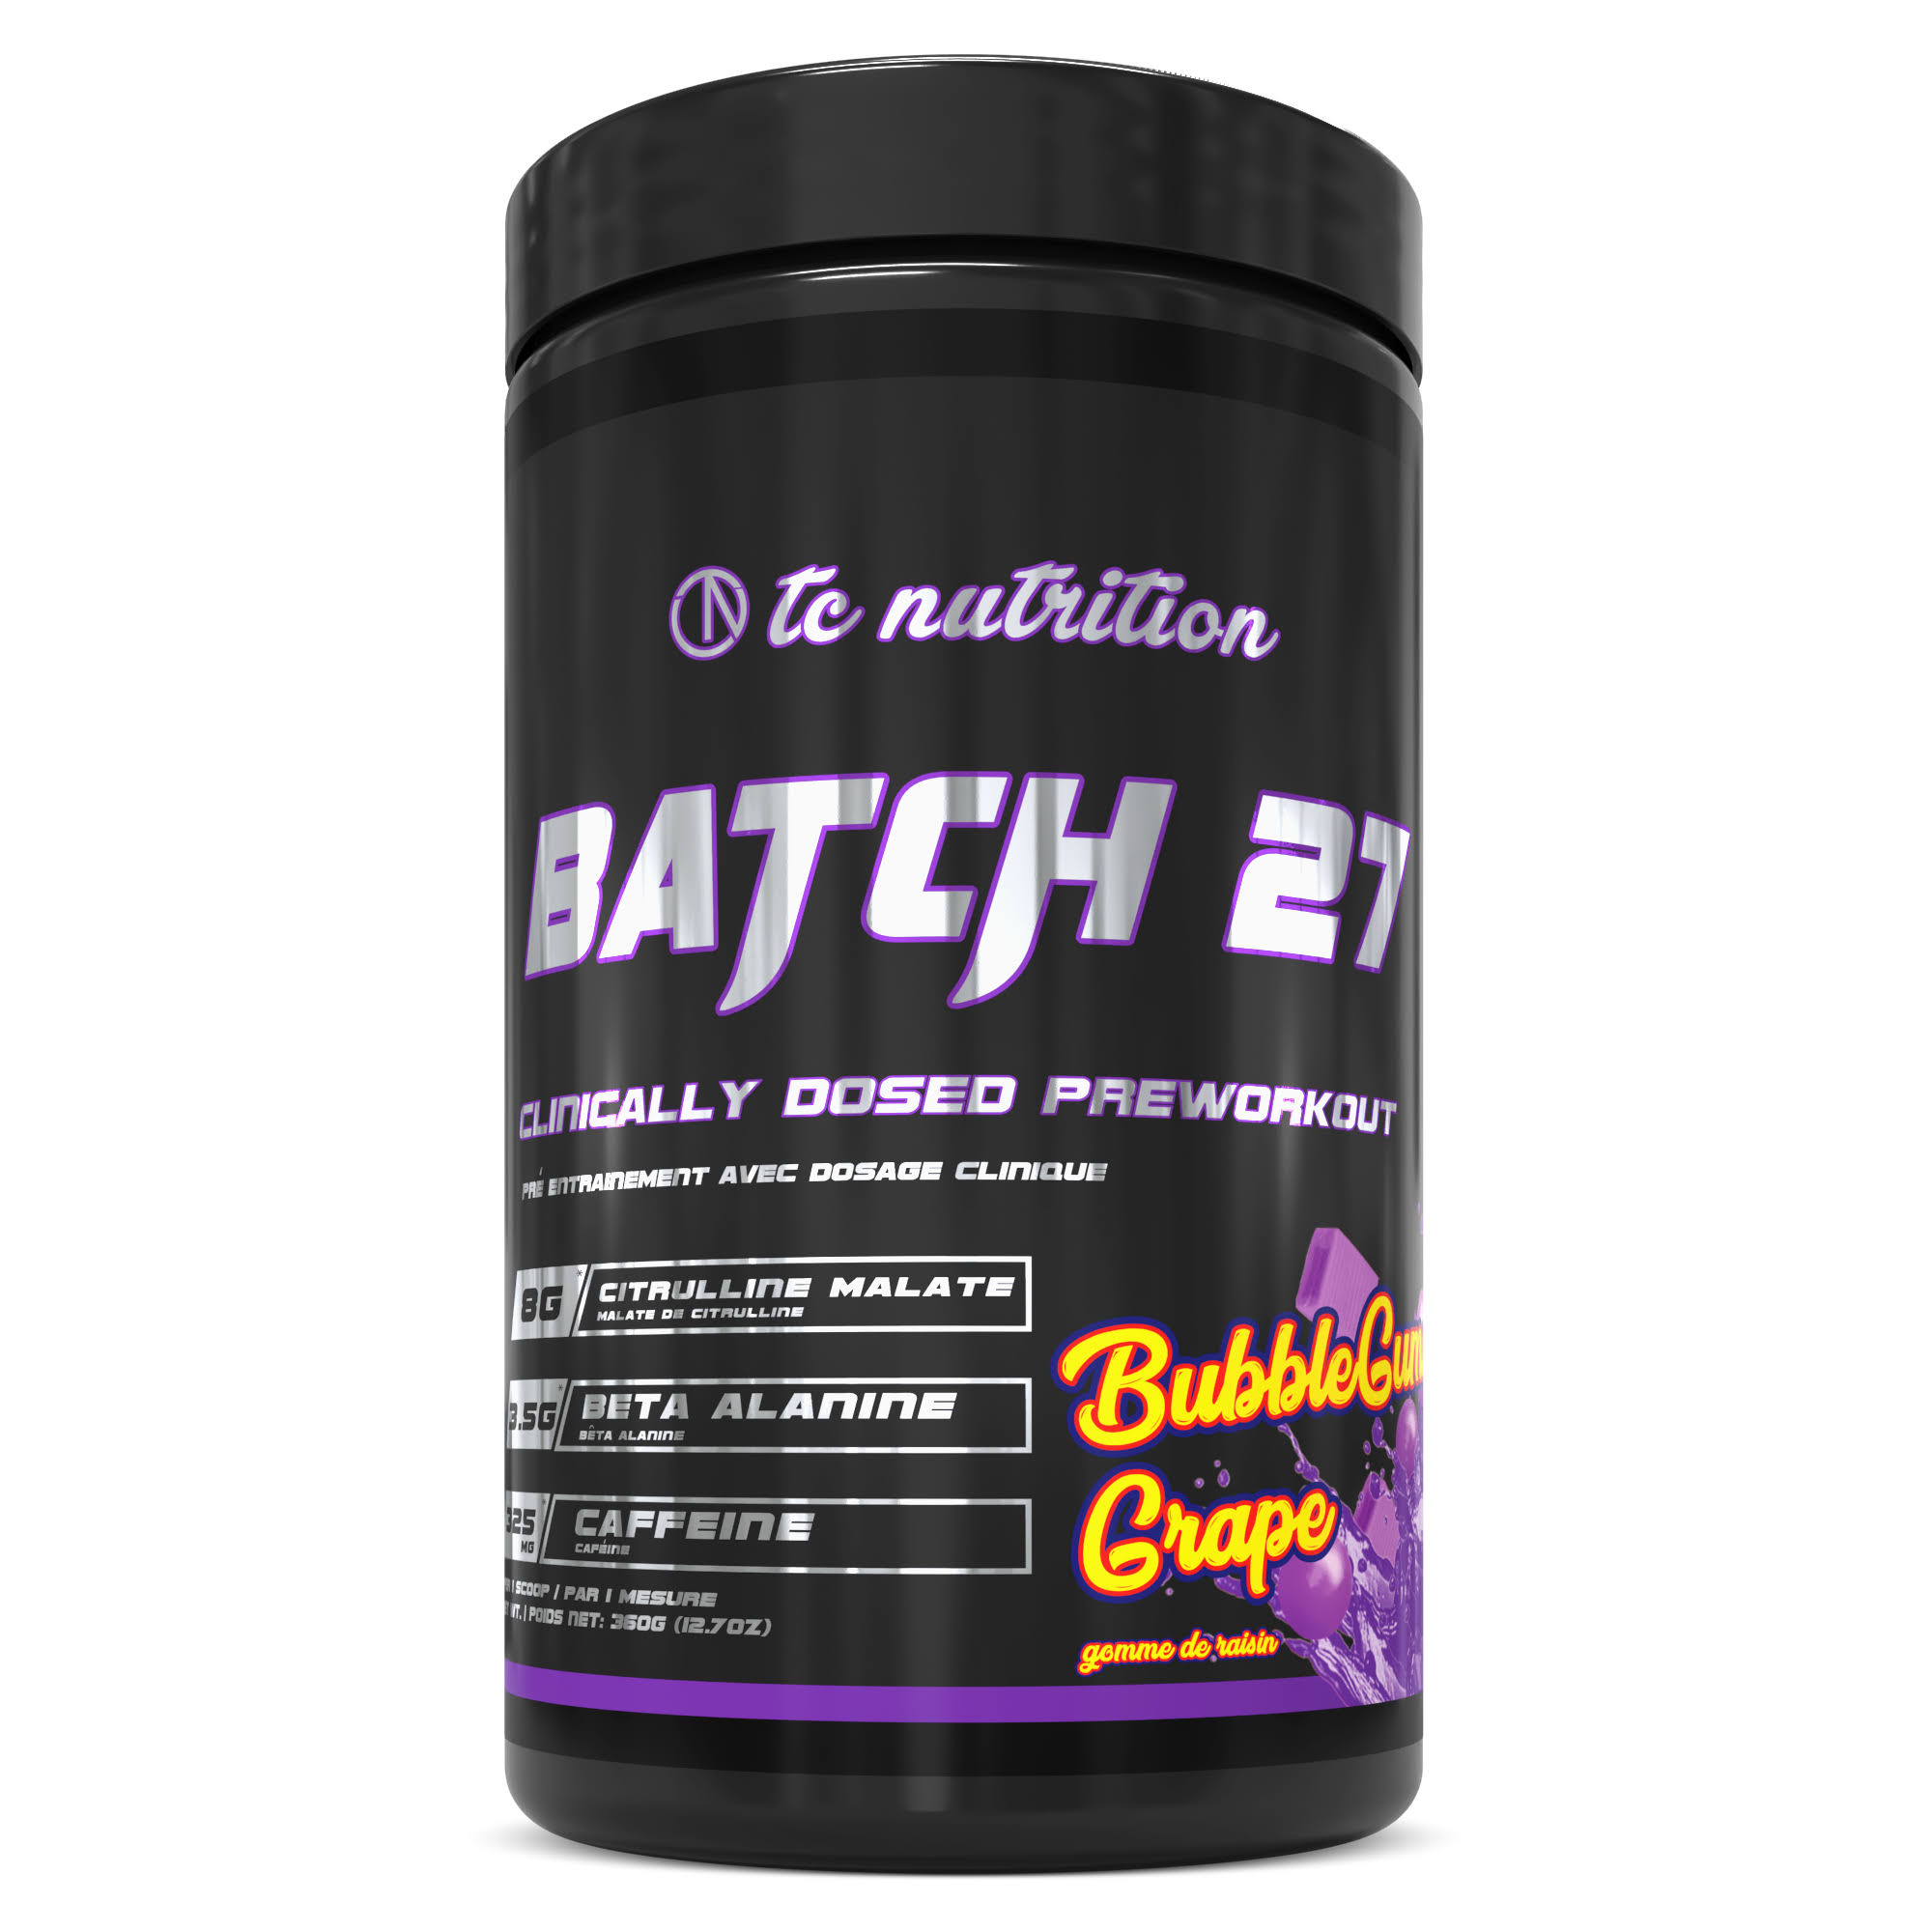 TC Nutrition - Batch 27